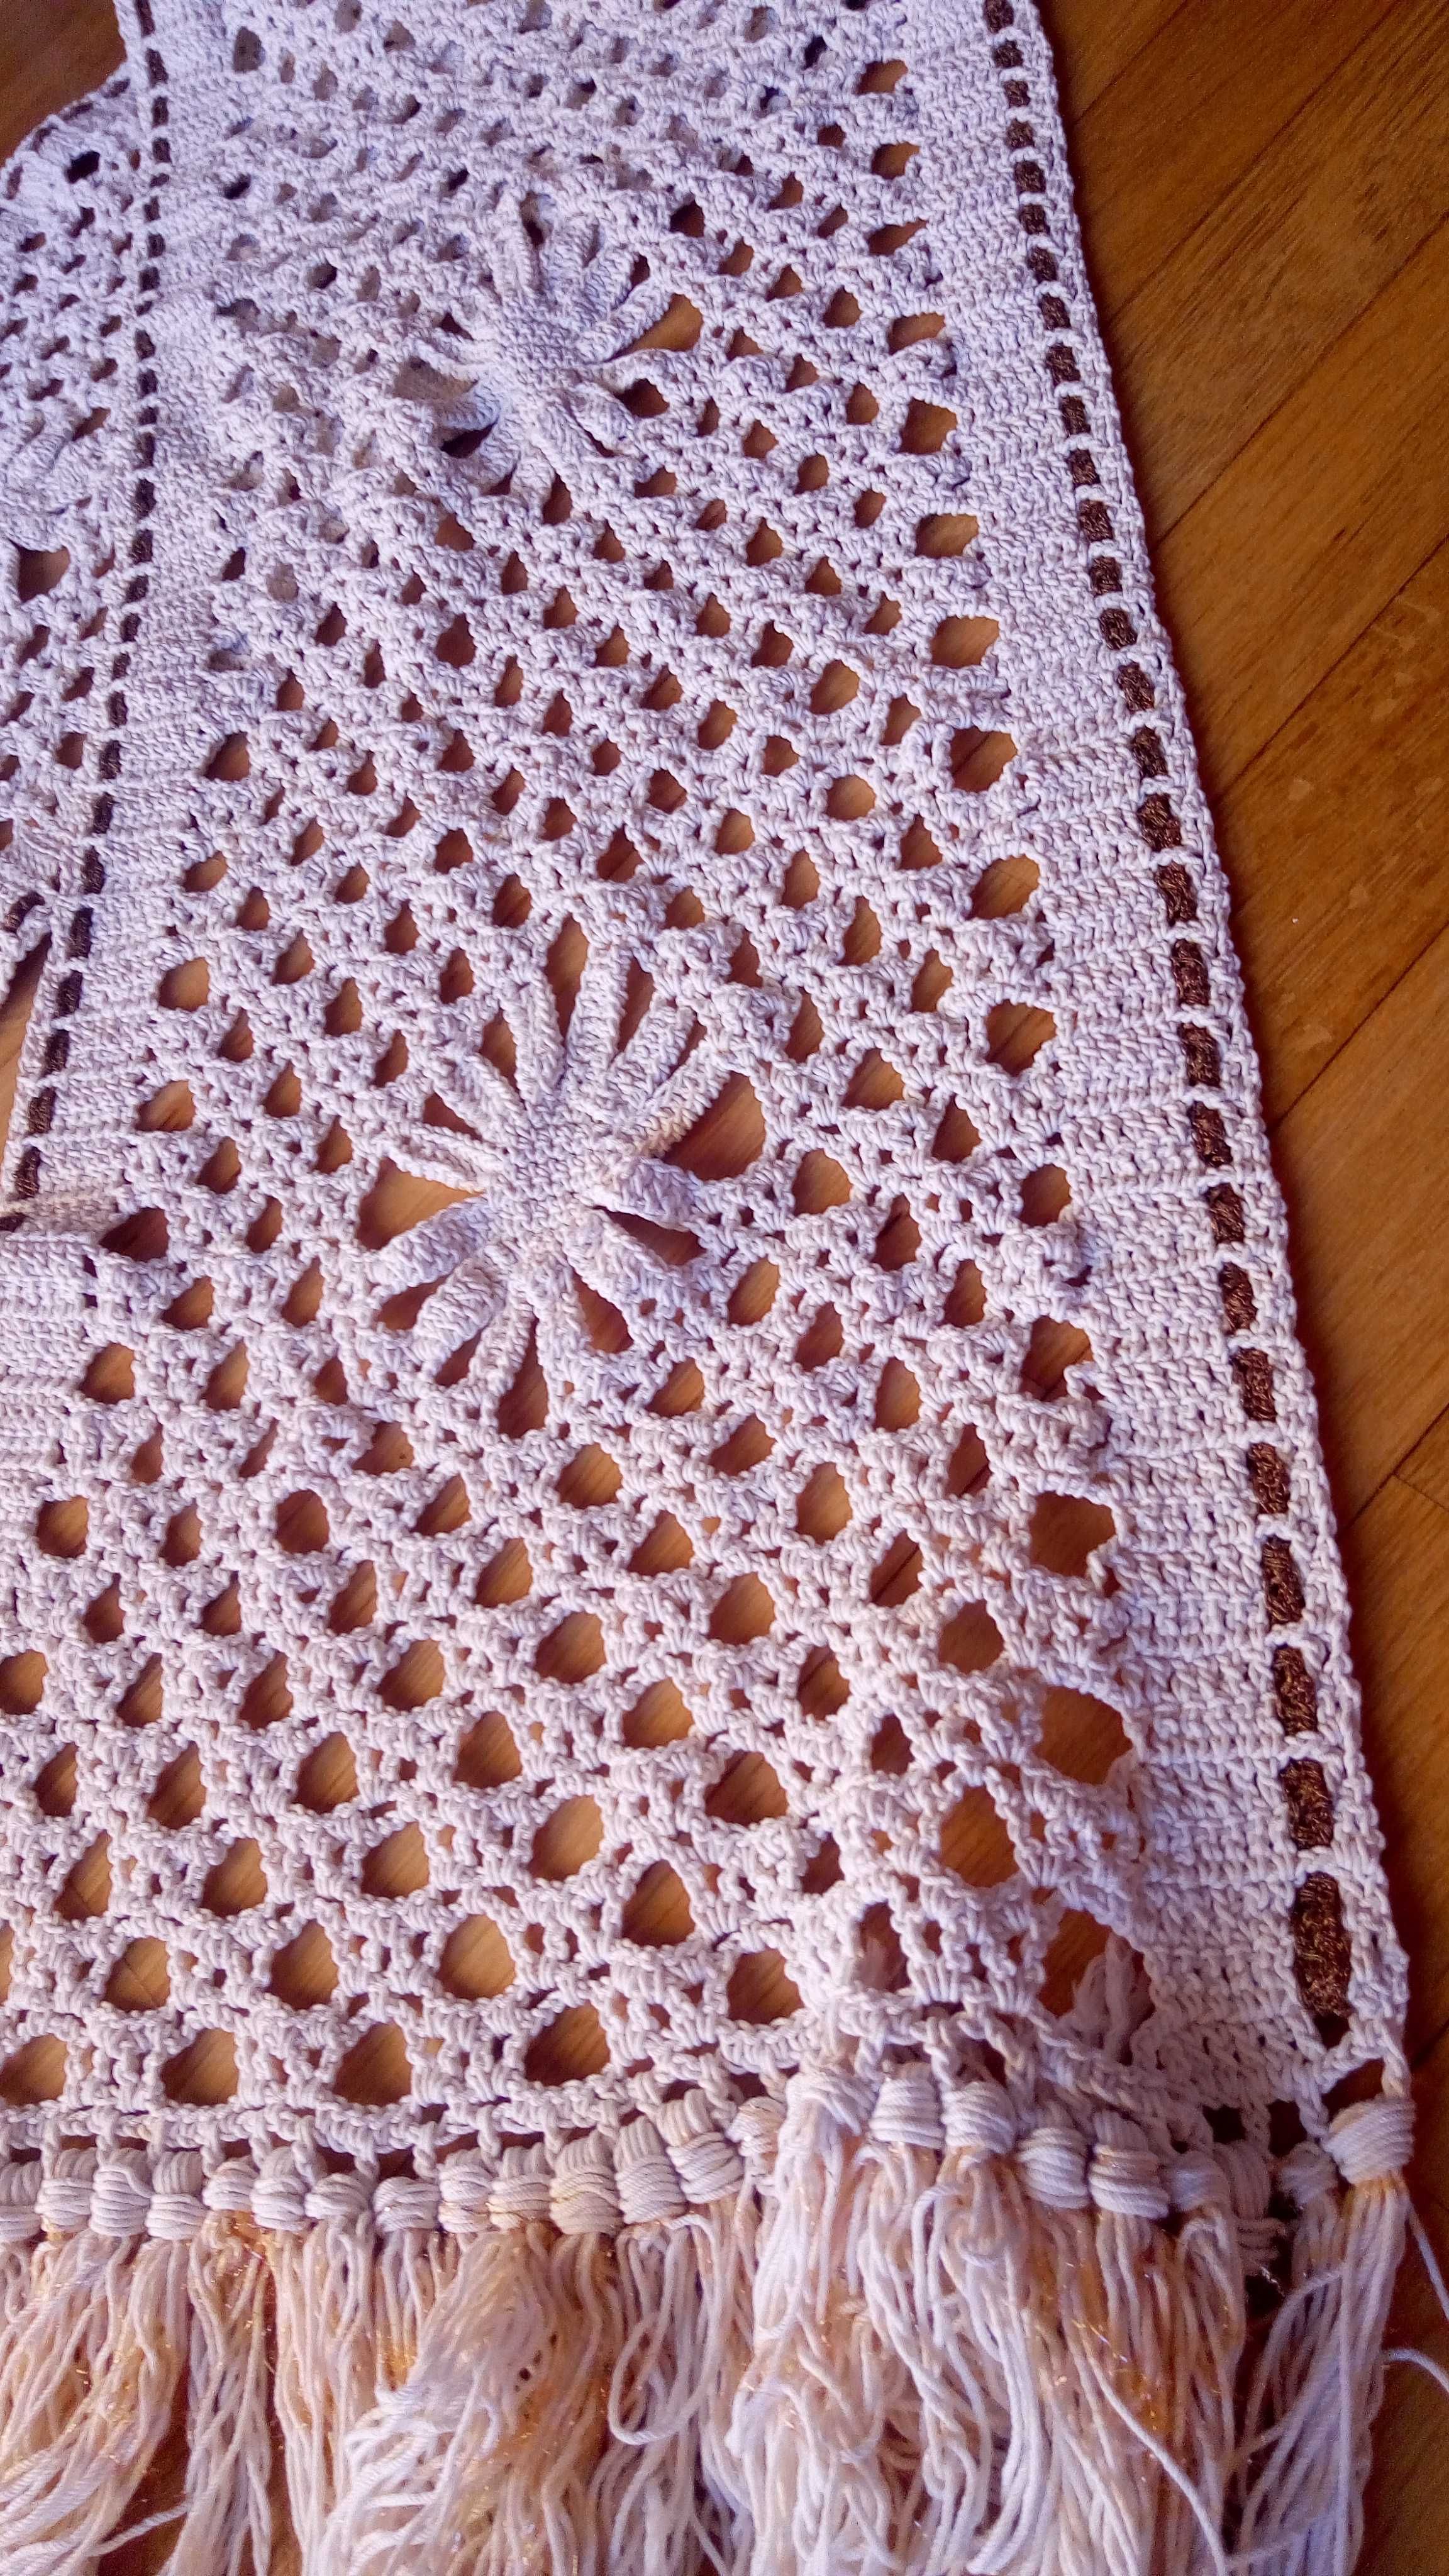 Panos diversos feitos em crochet e outros